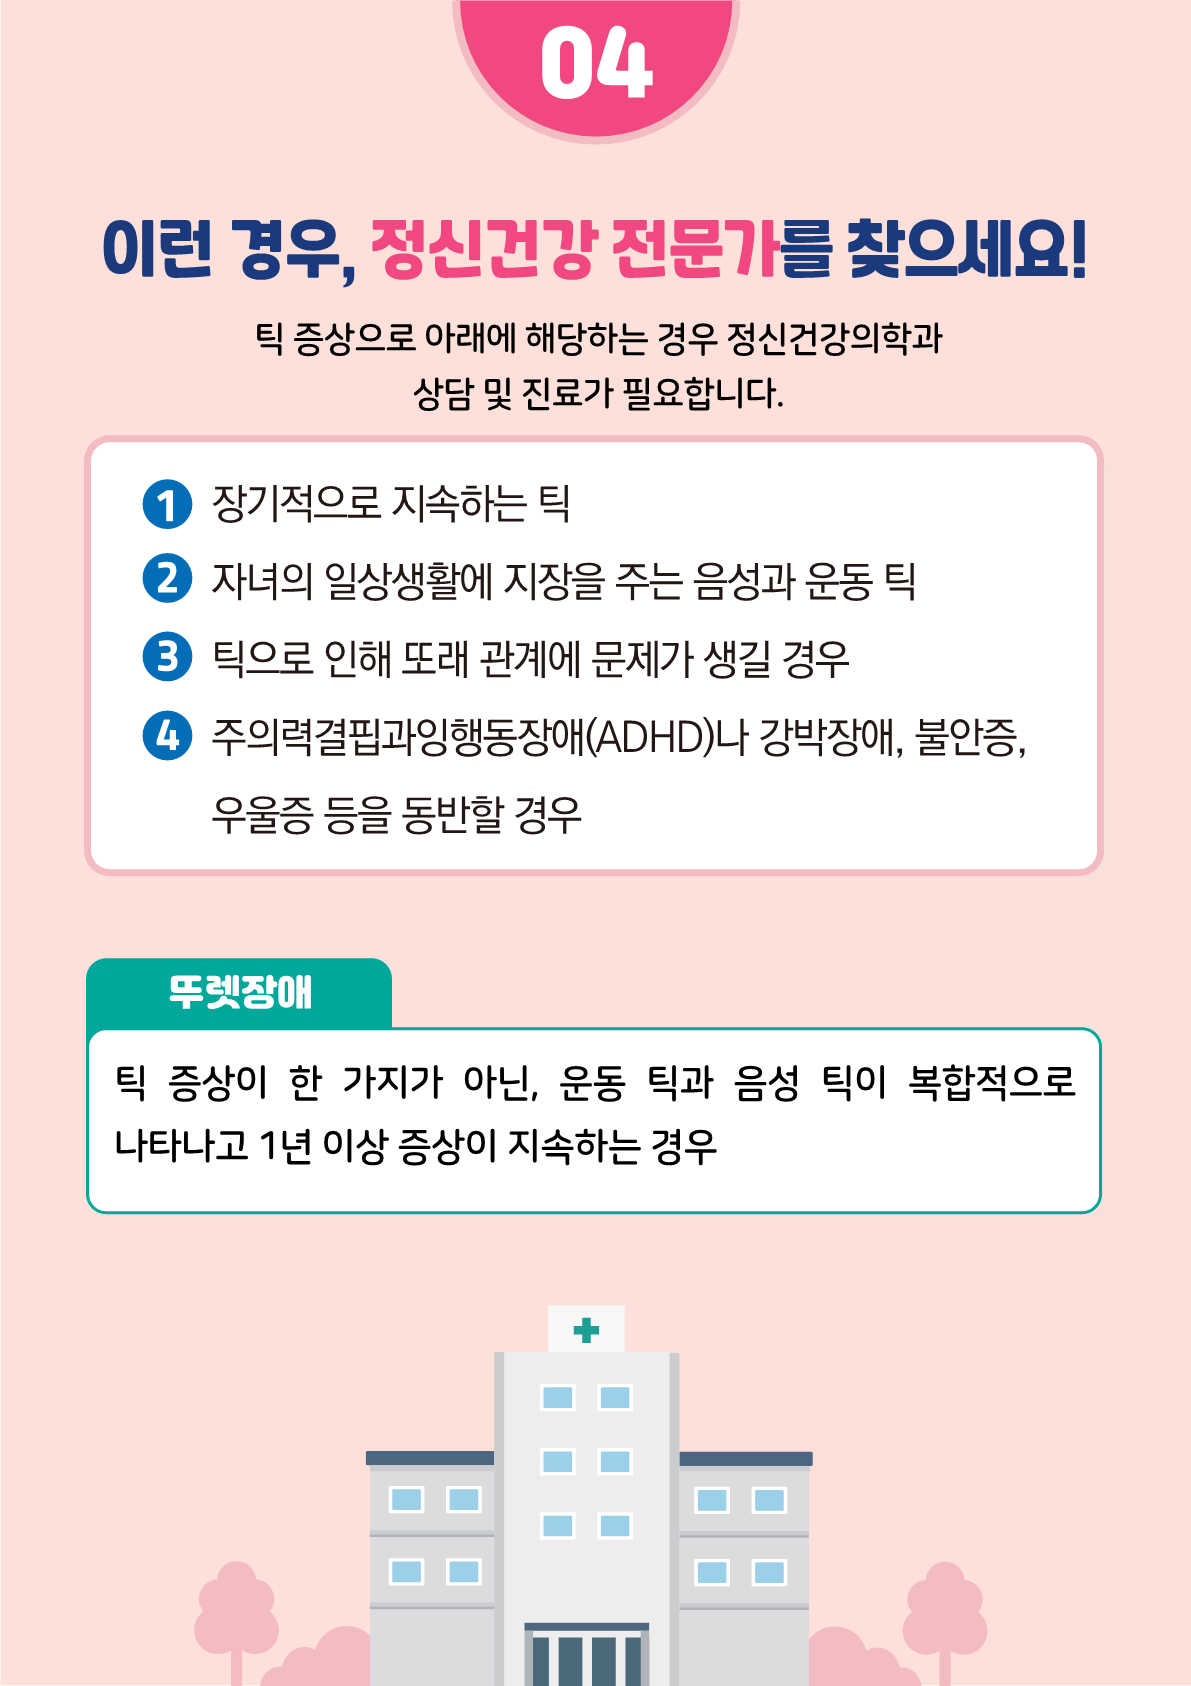 [붙임2]카드뉴스 제2021-5_틱장애(초등학부모용)_8.png